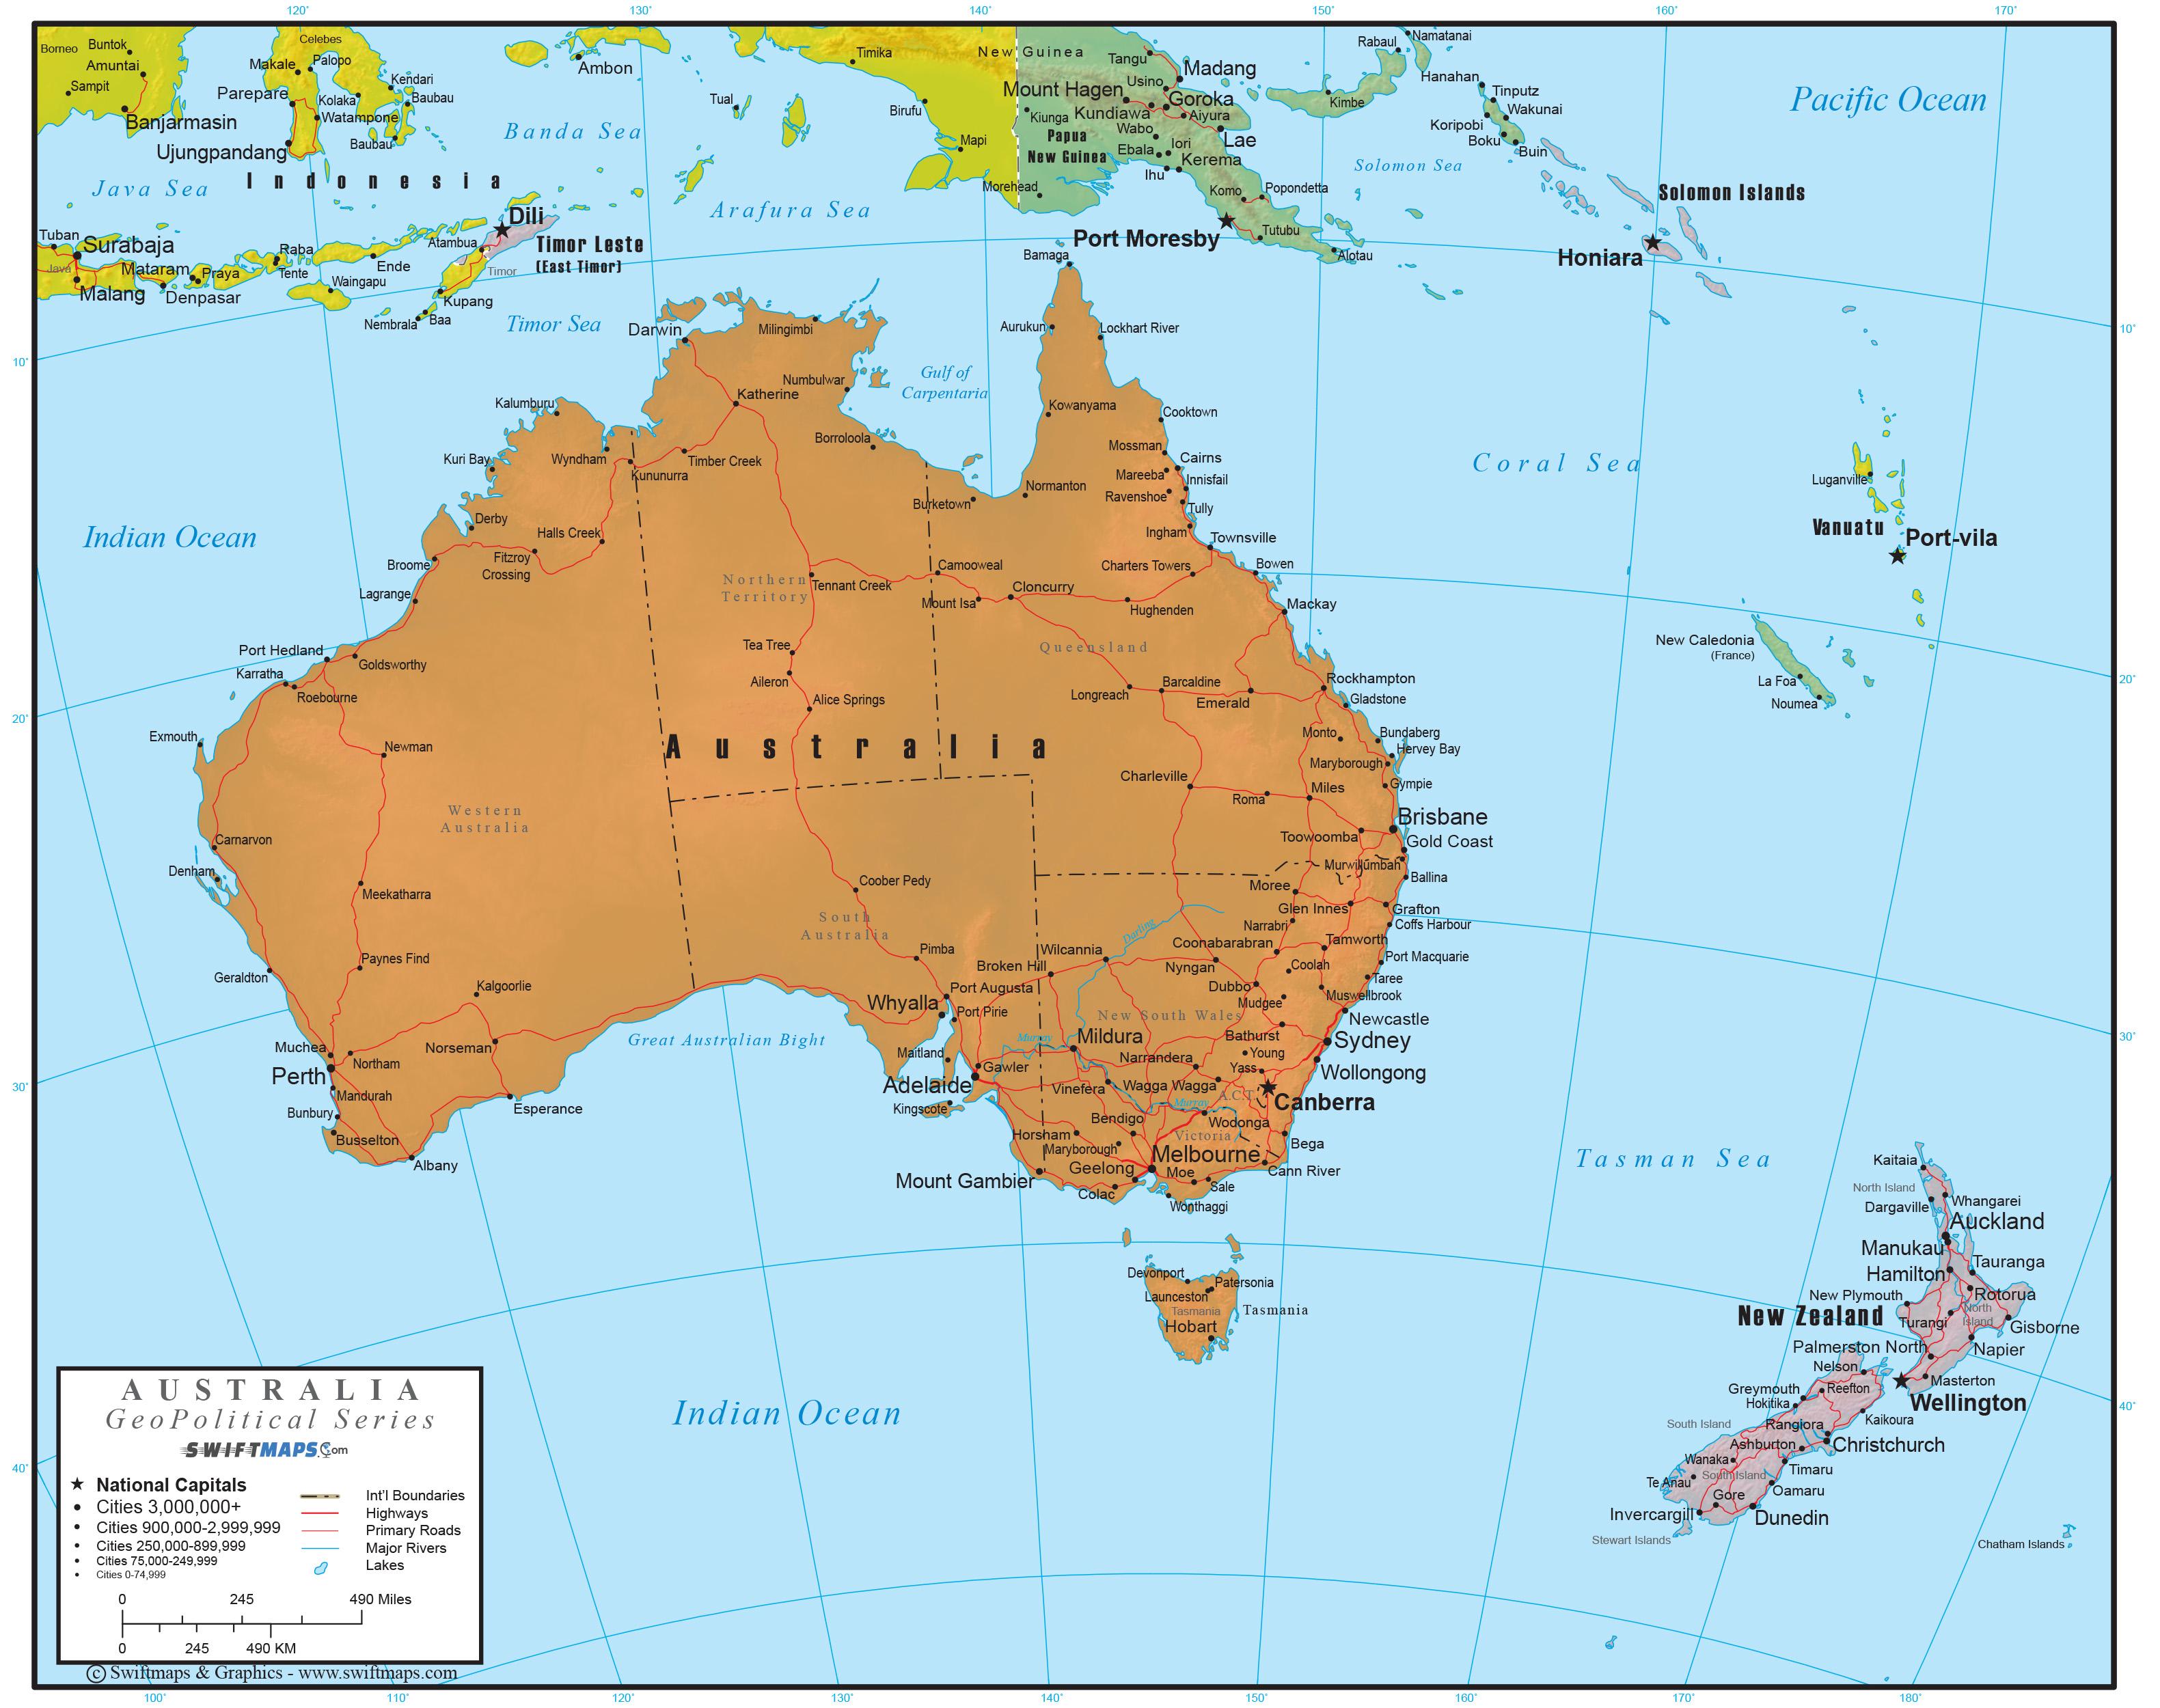 Материк австралия на карте мира фото